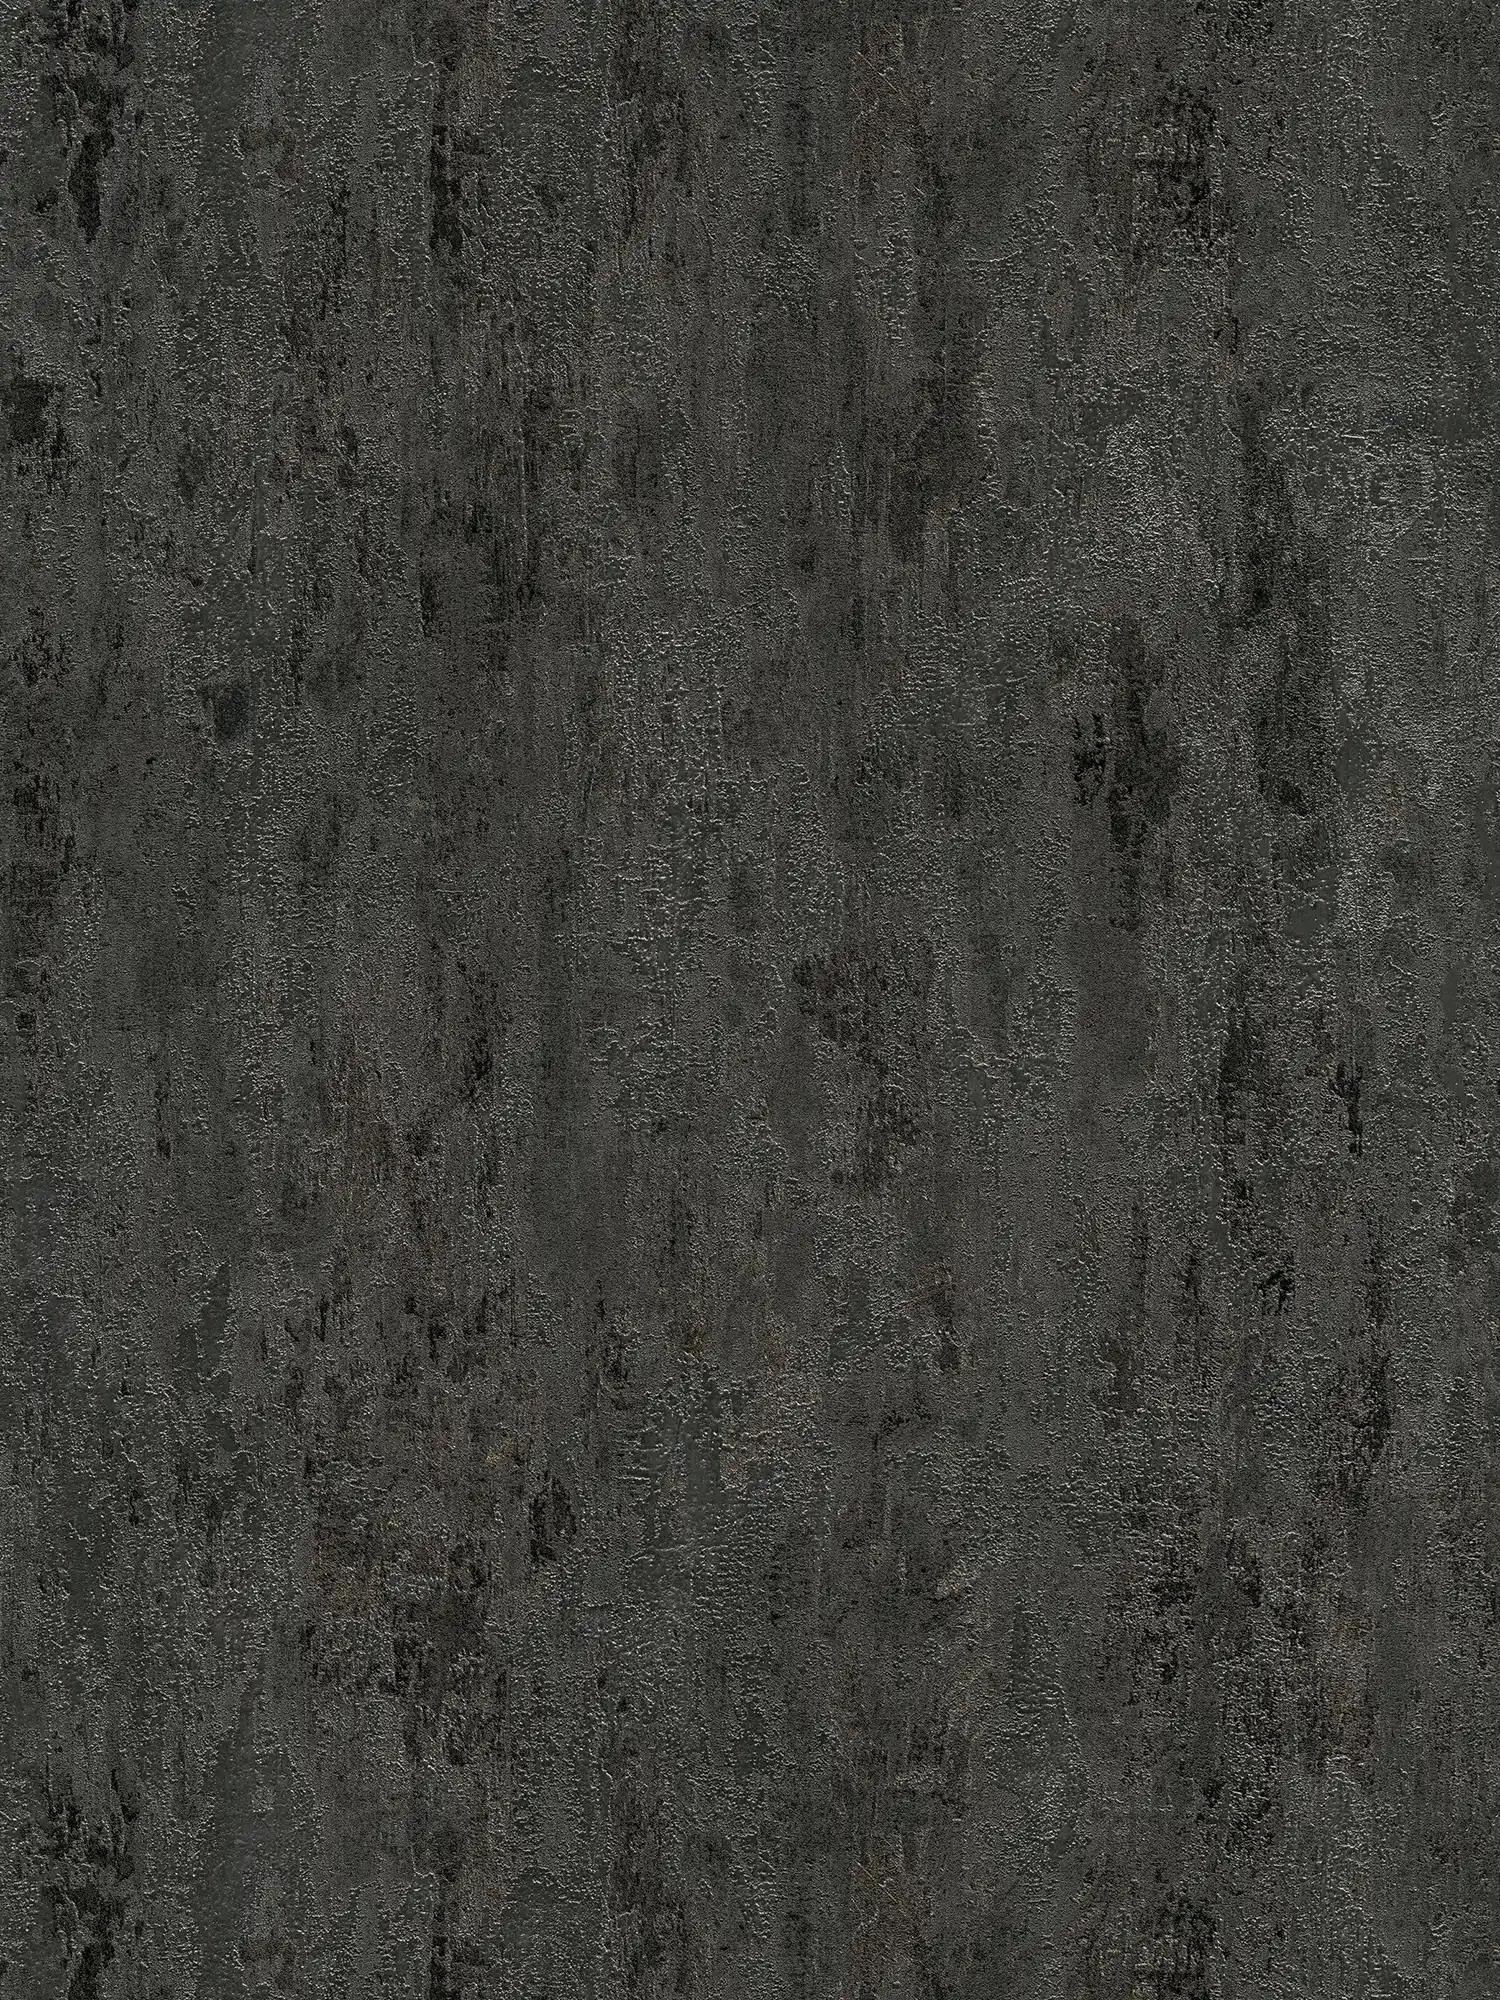 Rustiek structuurbehang metaallook antraciet - zwart, zilver, grijs
